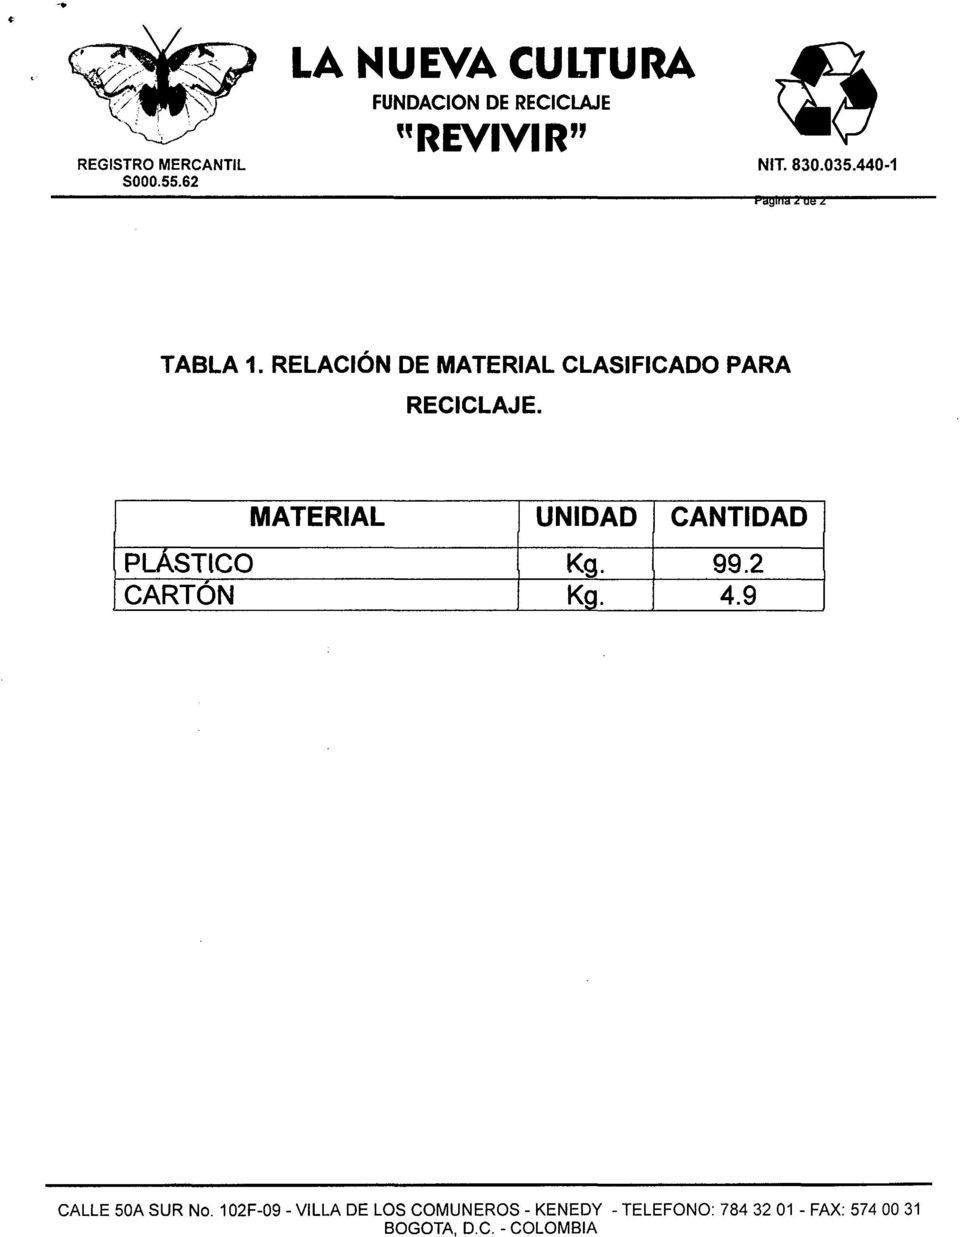 MATERIAL UNIDAD CANTIDAD PLÁSTlCO Kg. 99.2 CARTON Kg. 4.